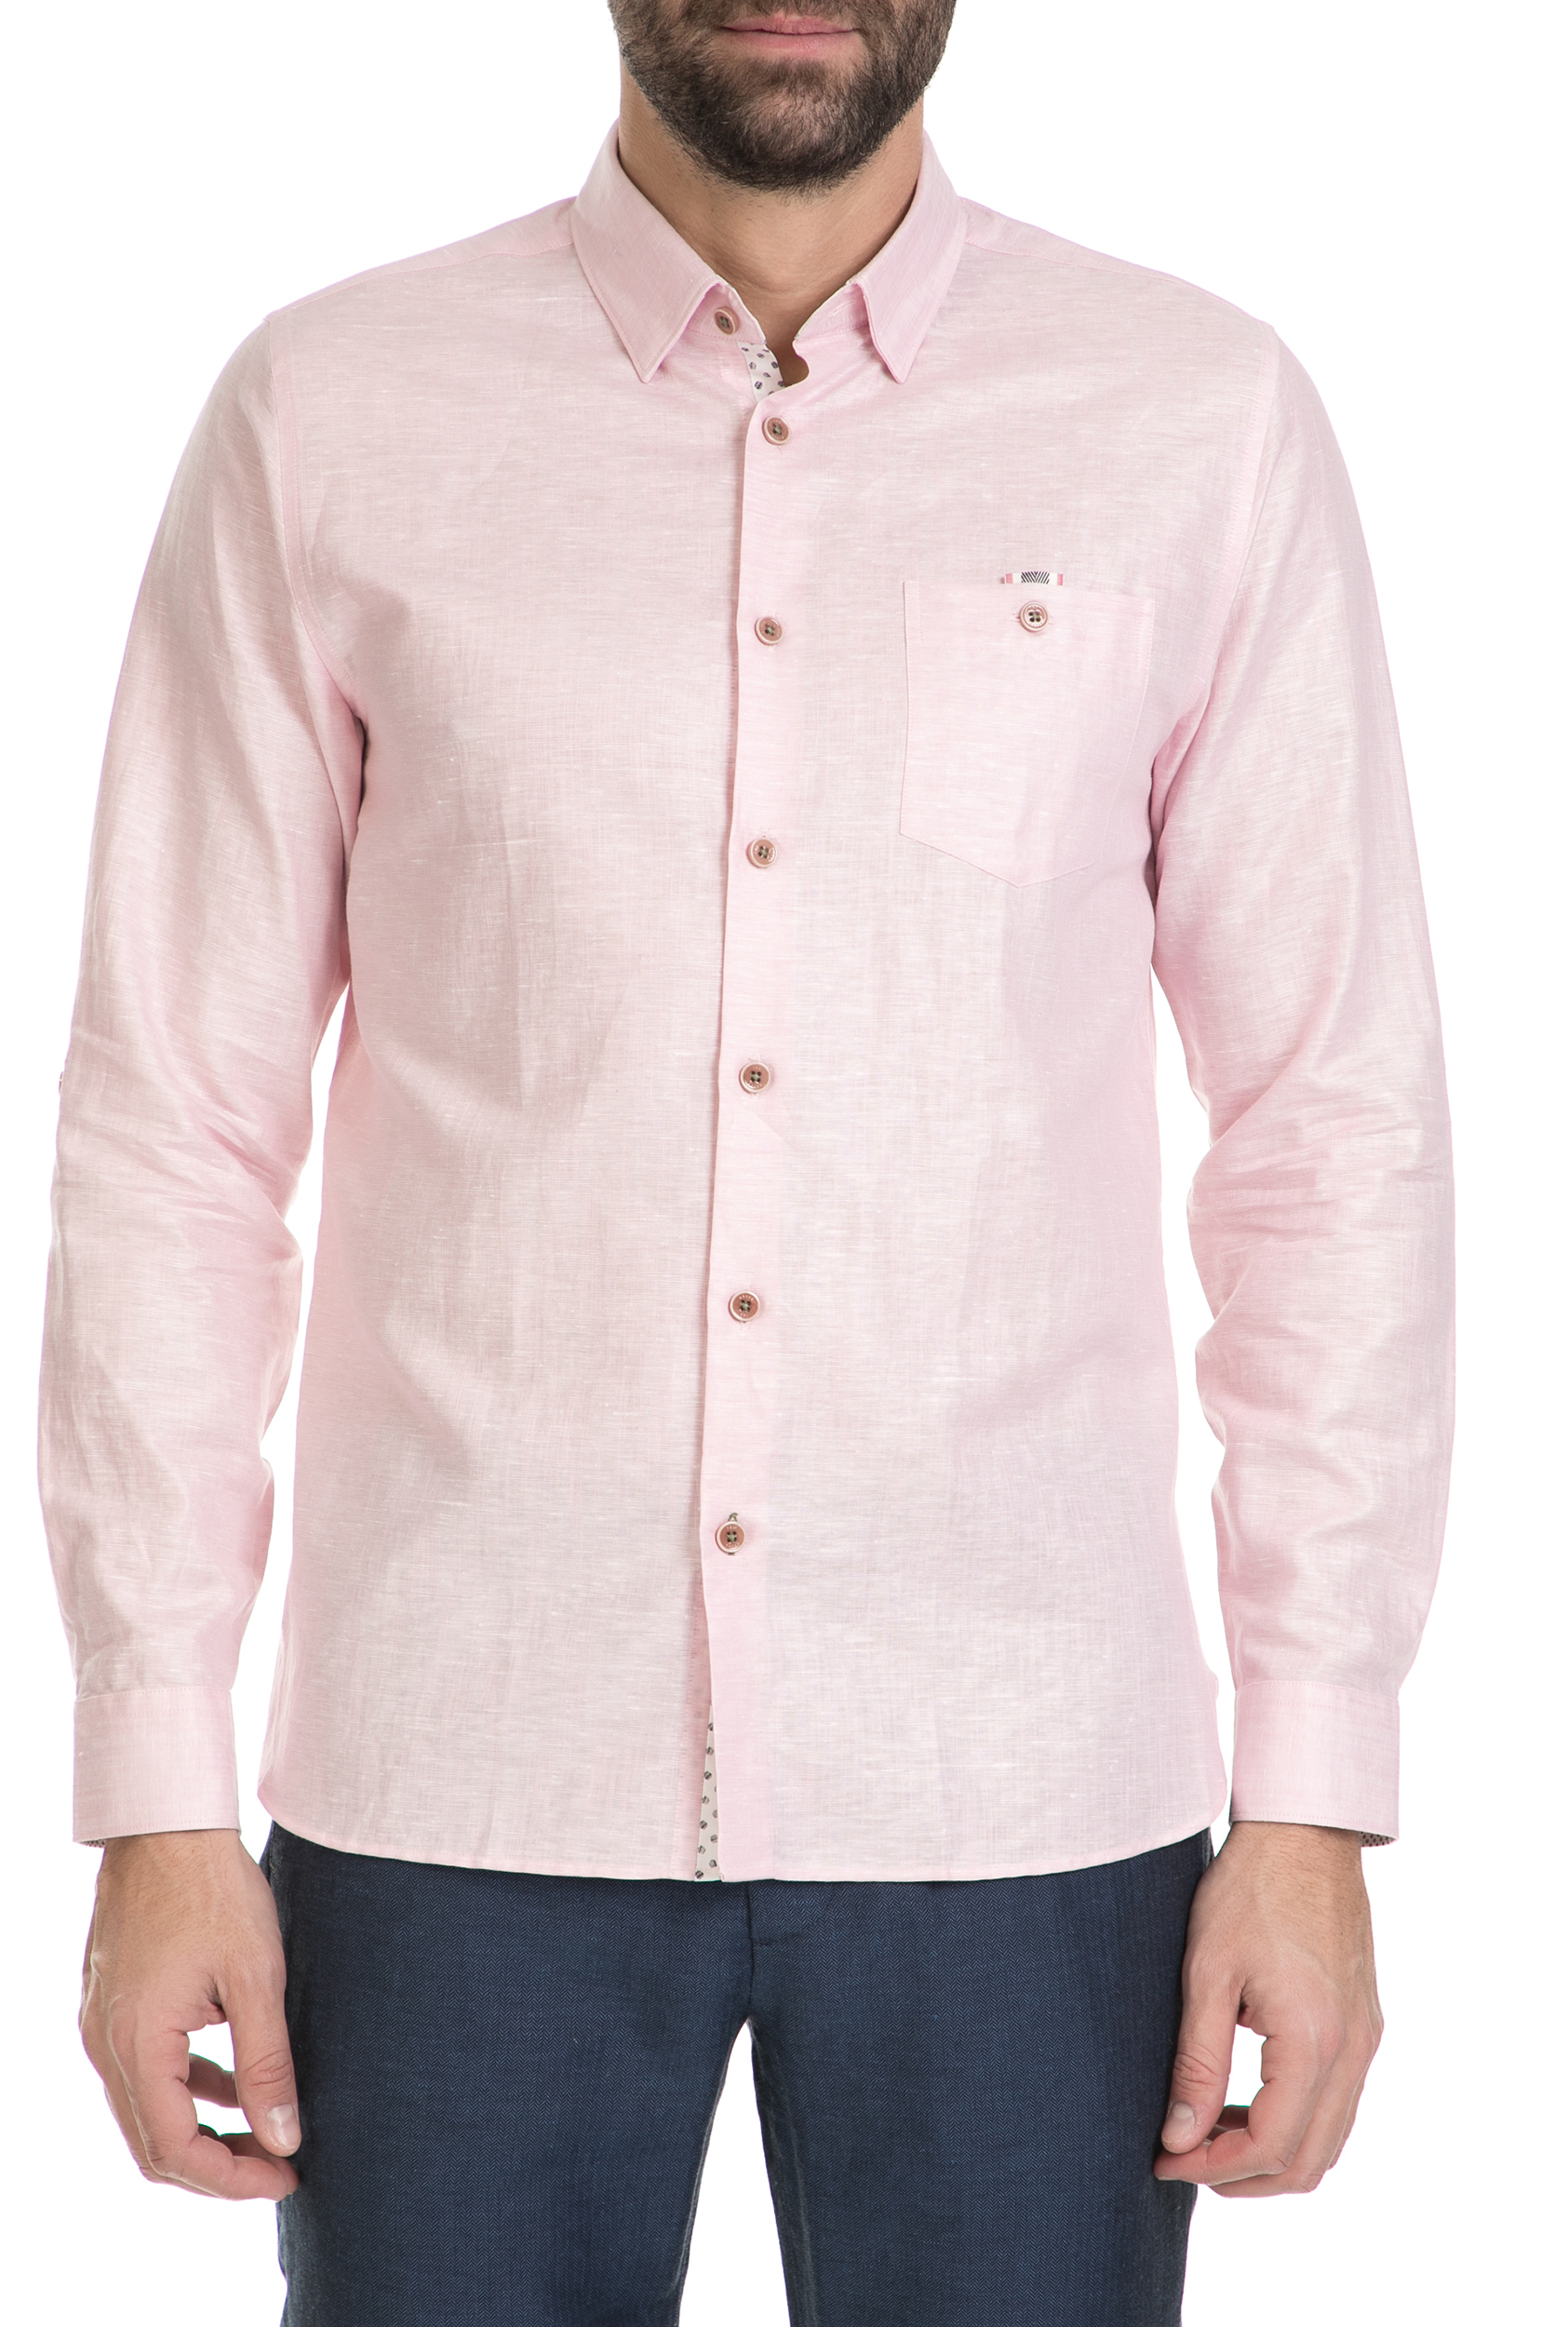 Ανδρικά/Ρούχα/Πουκάμισα/Μακρυμάνικα TED BAKER - Ανδρικό λινό πουκάμισο TED BAKER ροζ